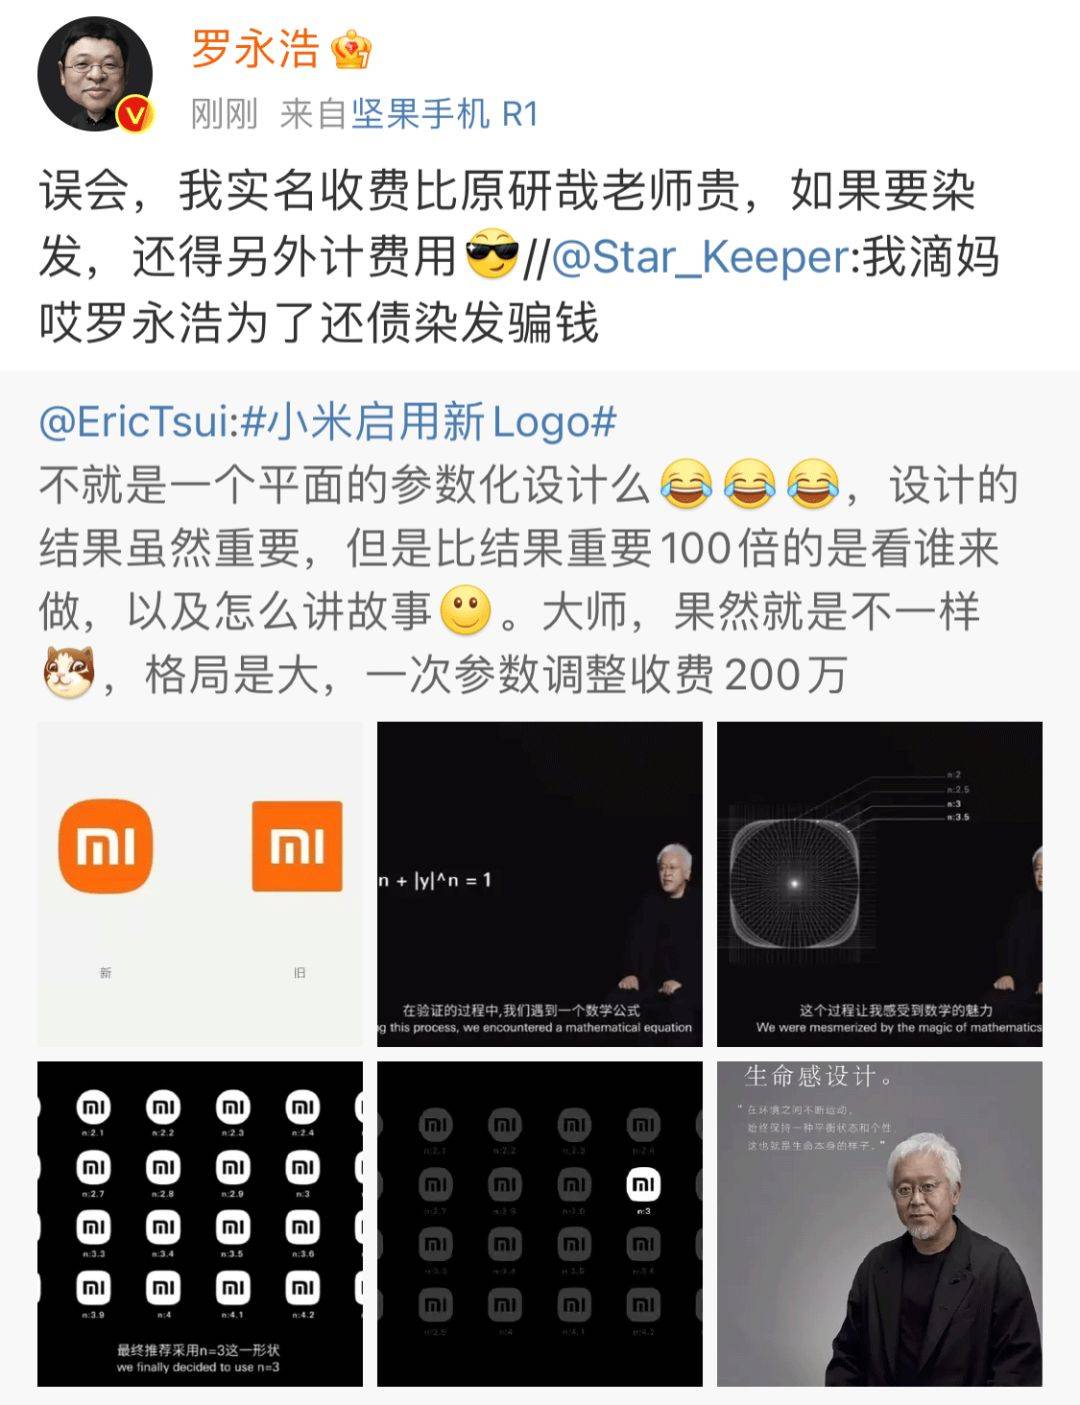 640 1 - Smettere di litigare! Il nuovo logo realizzato da Xiaomi Mi 2 milioni è già fantastico!